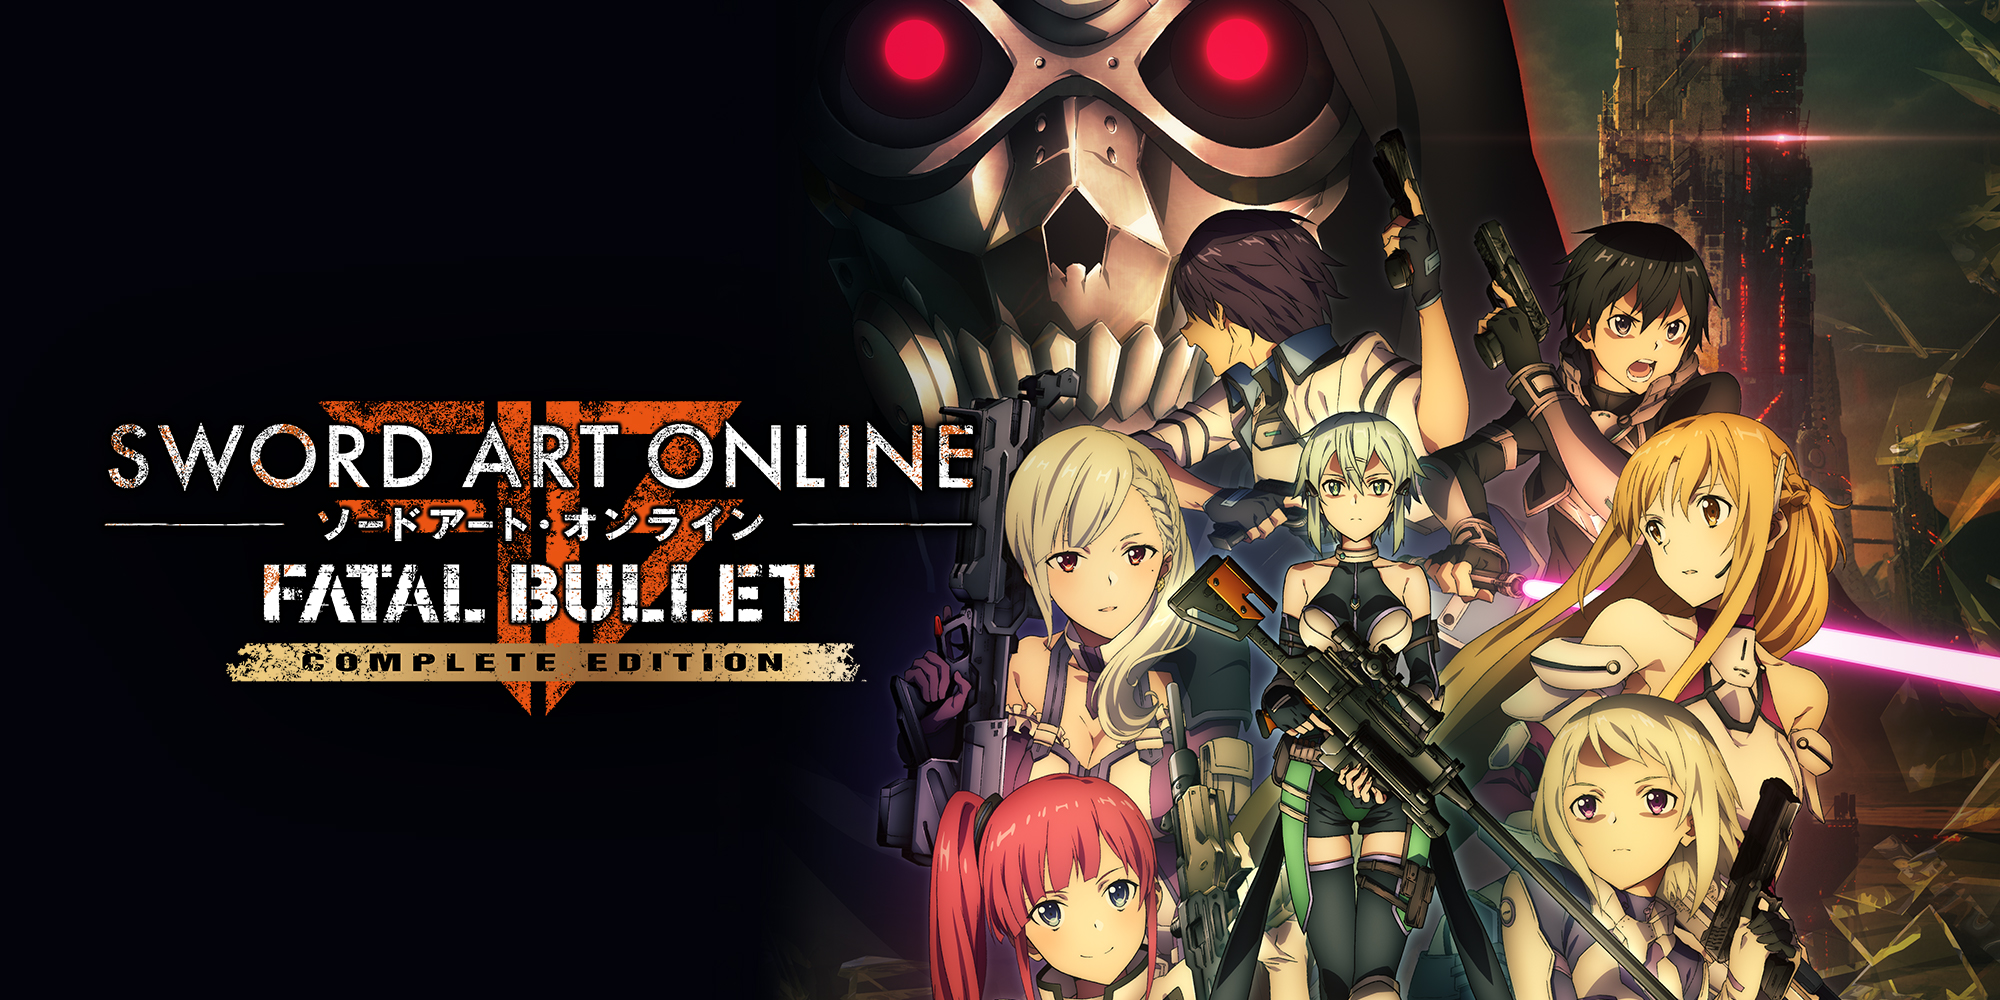 Crítica] Sword Art Online: Fatal Bullet - O melhor jogo da Franquia!